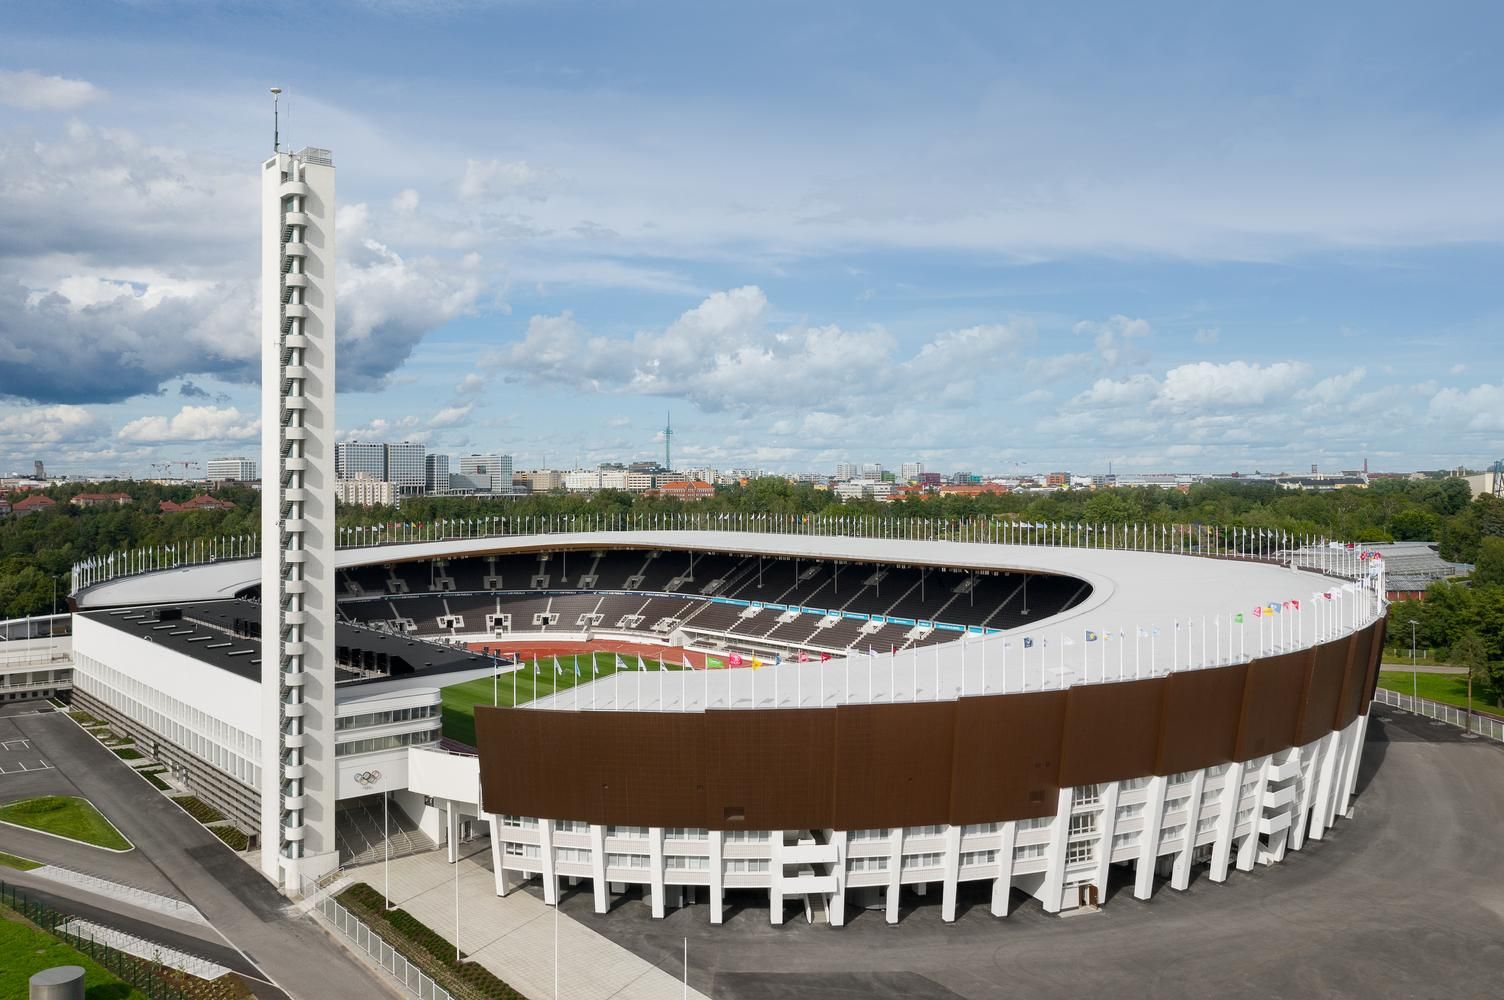 Белый бетон, дерево и стекло: в Хельсинки открыли обновленный олимпийский стадион – фото